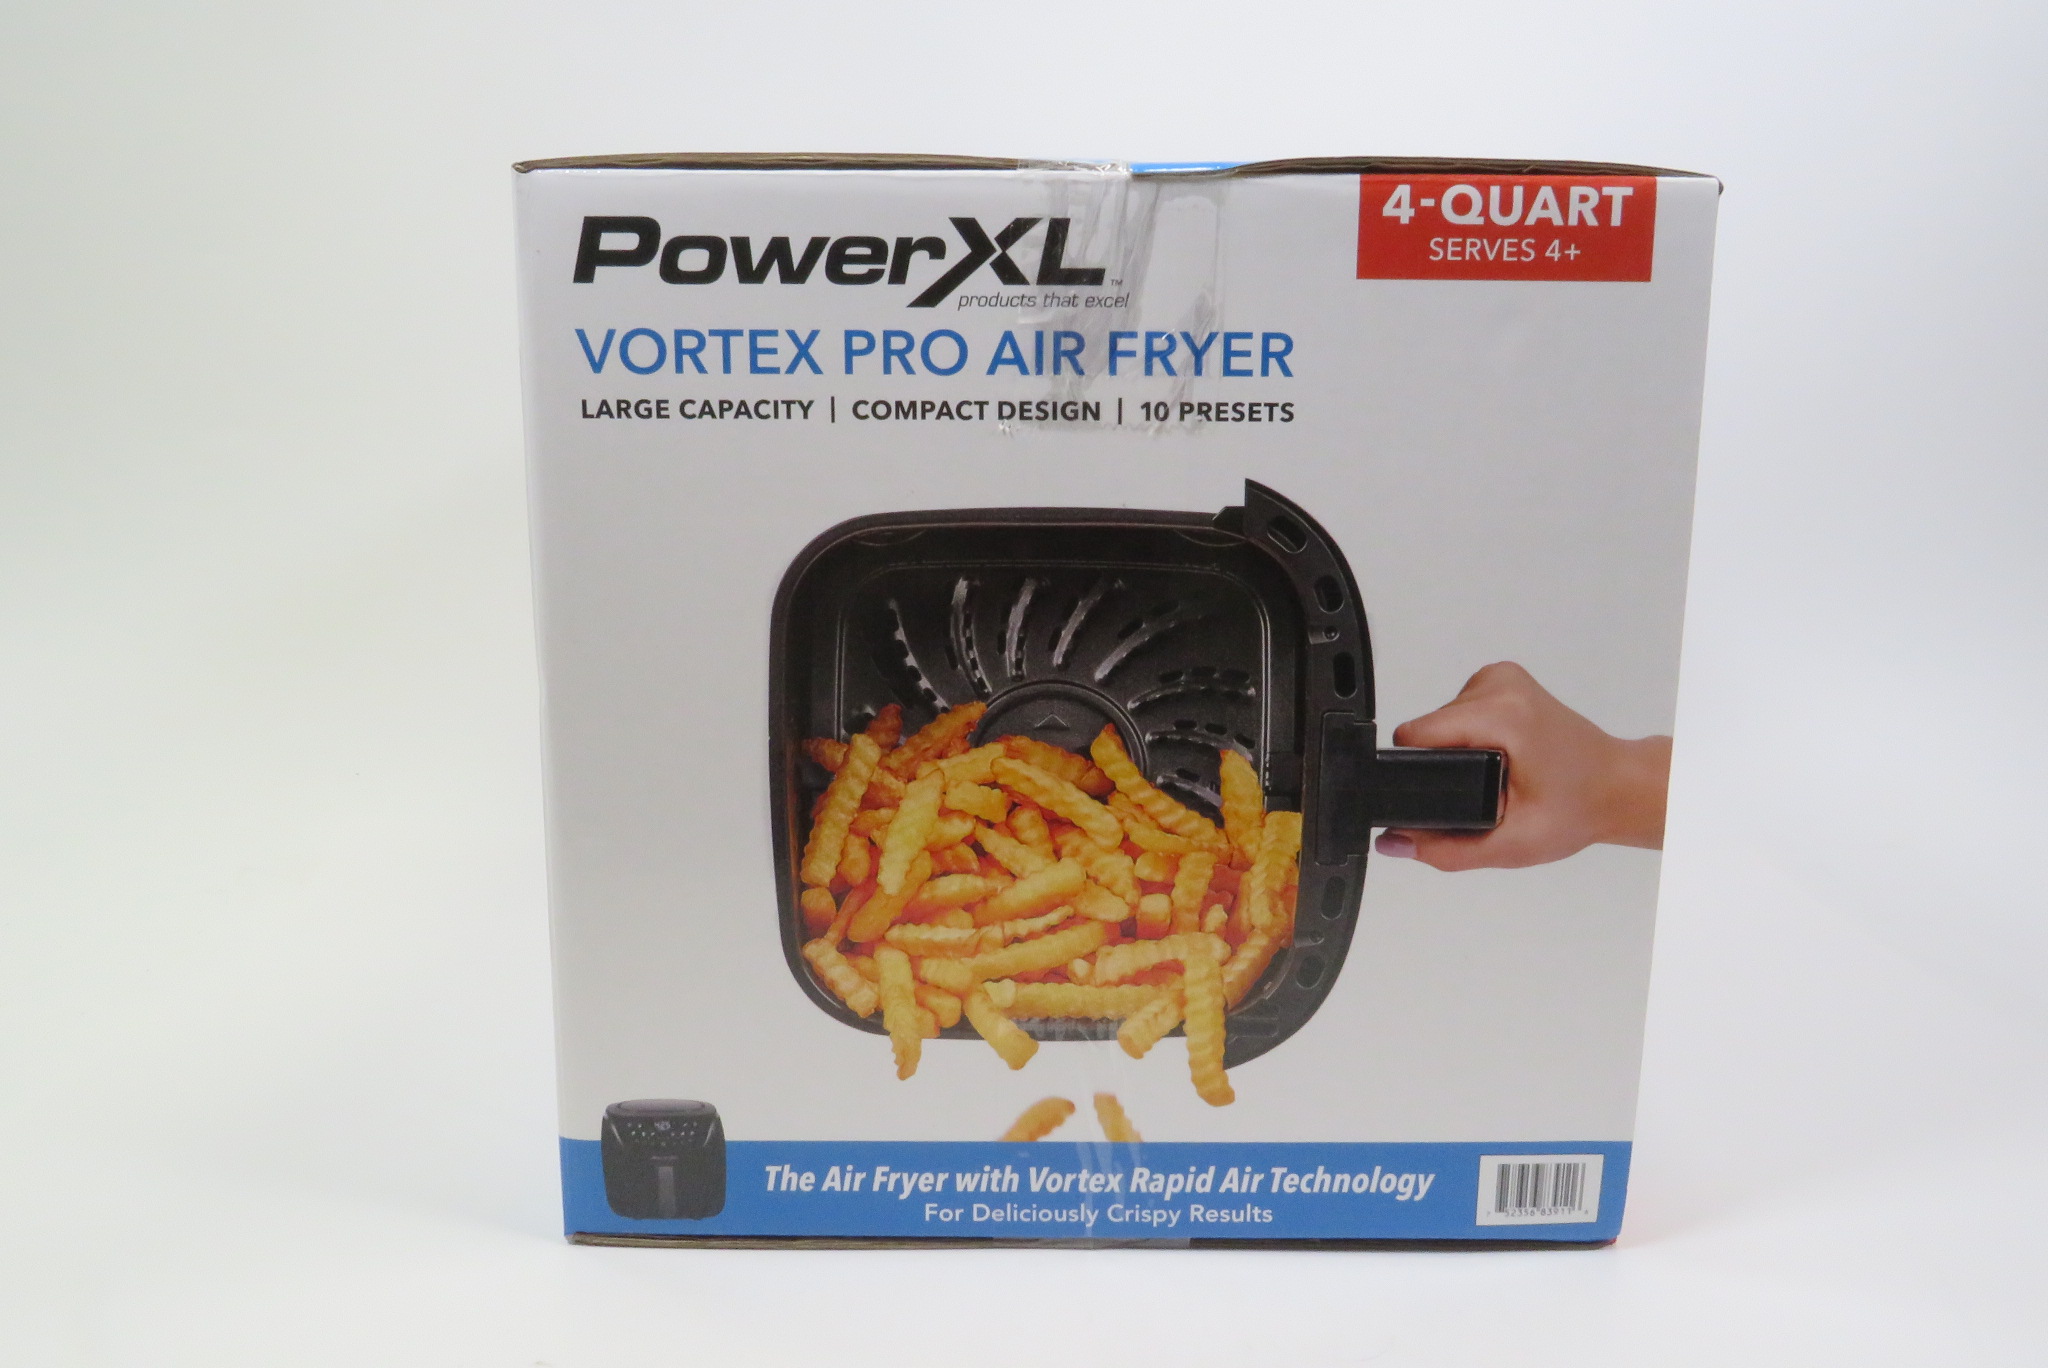 PowerXL Vortex Pro 4-qt. Air Fryer